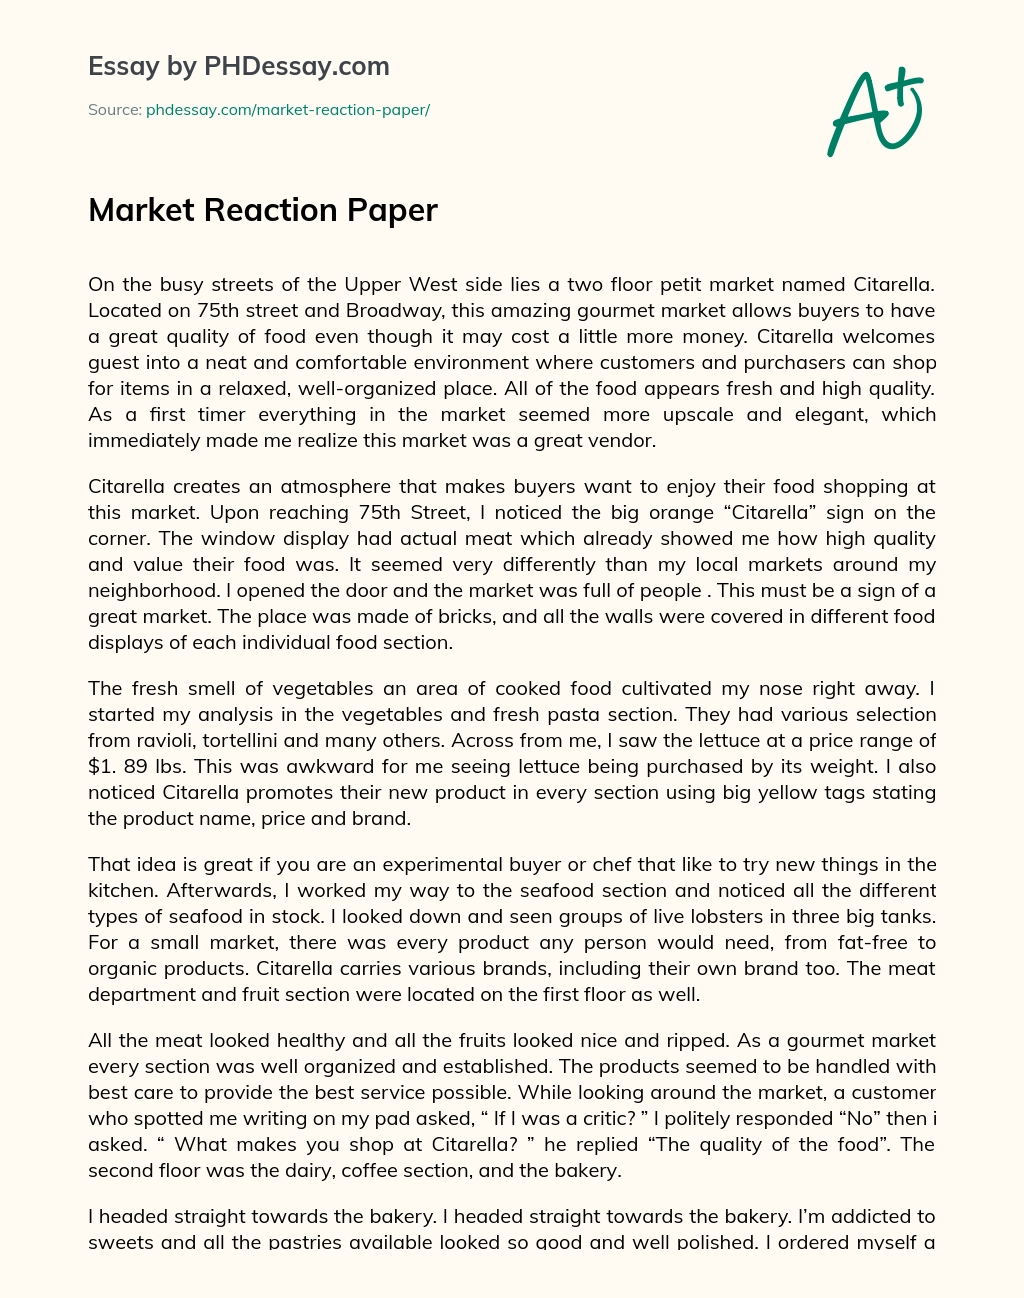 Market Reaction Paper essay